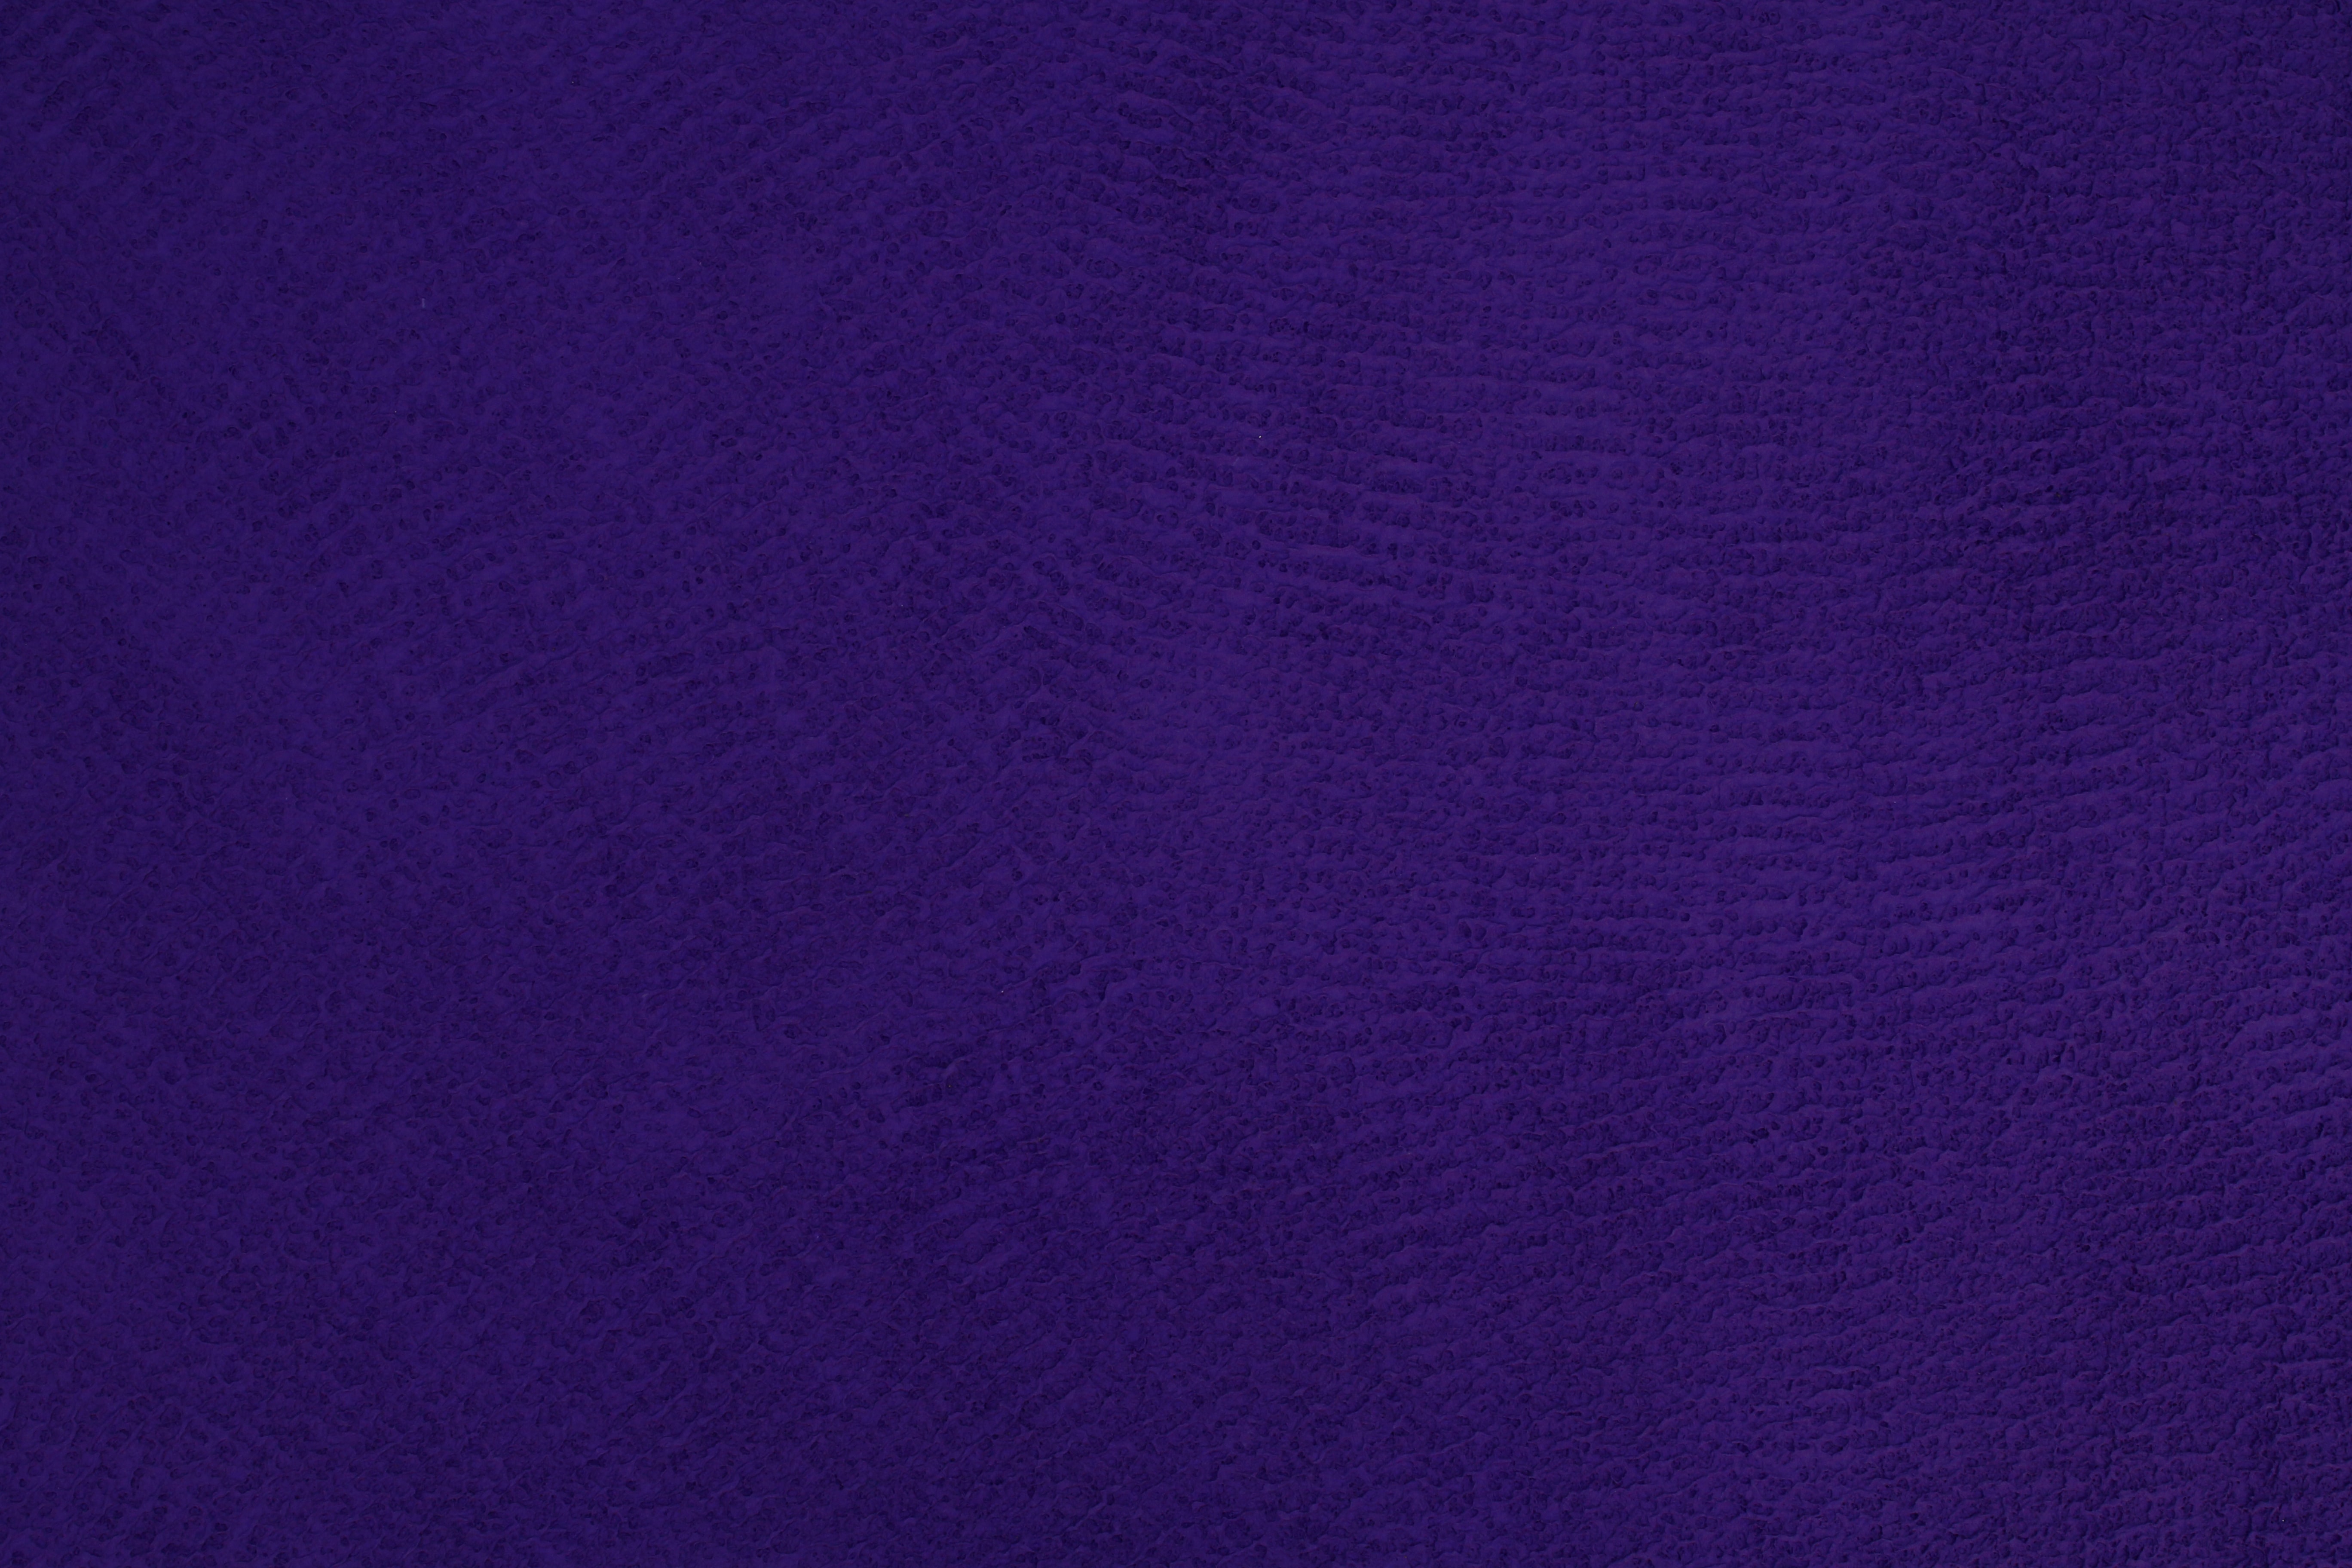 texture, violet, textures, surface, purple, rough